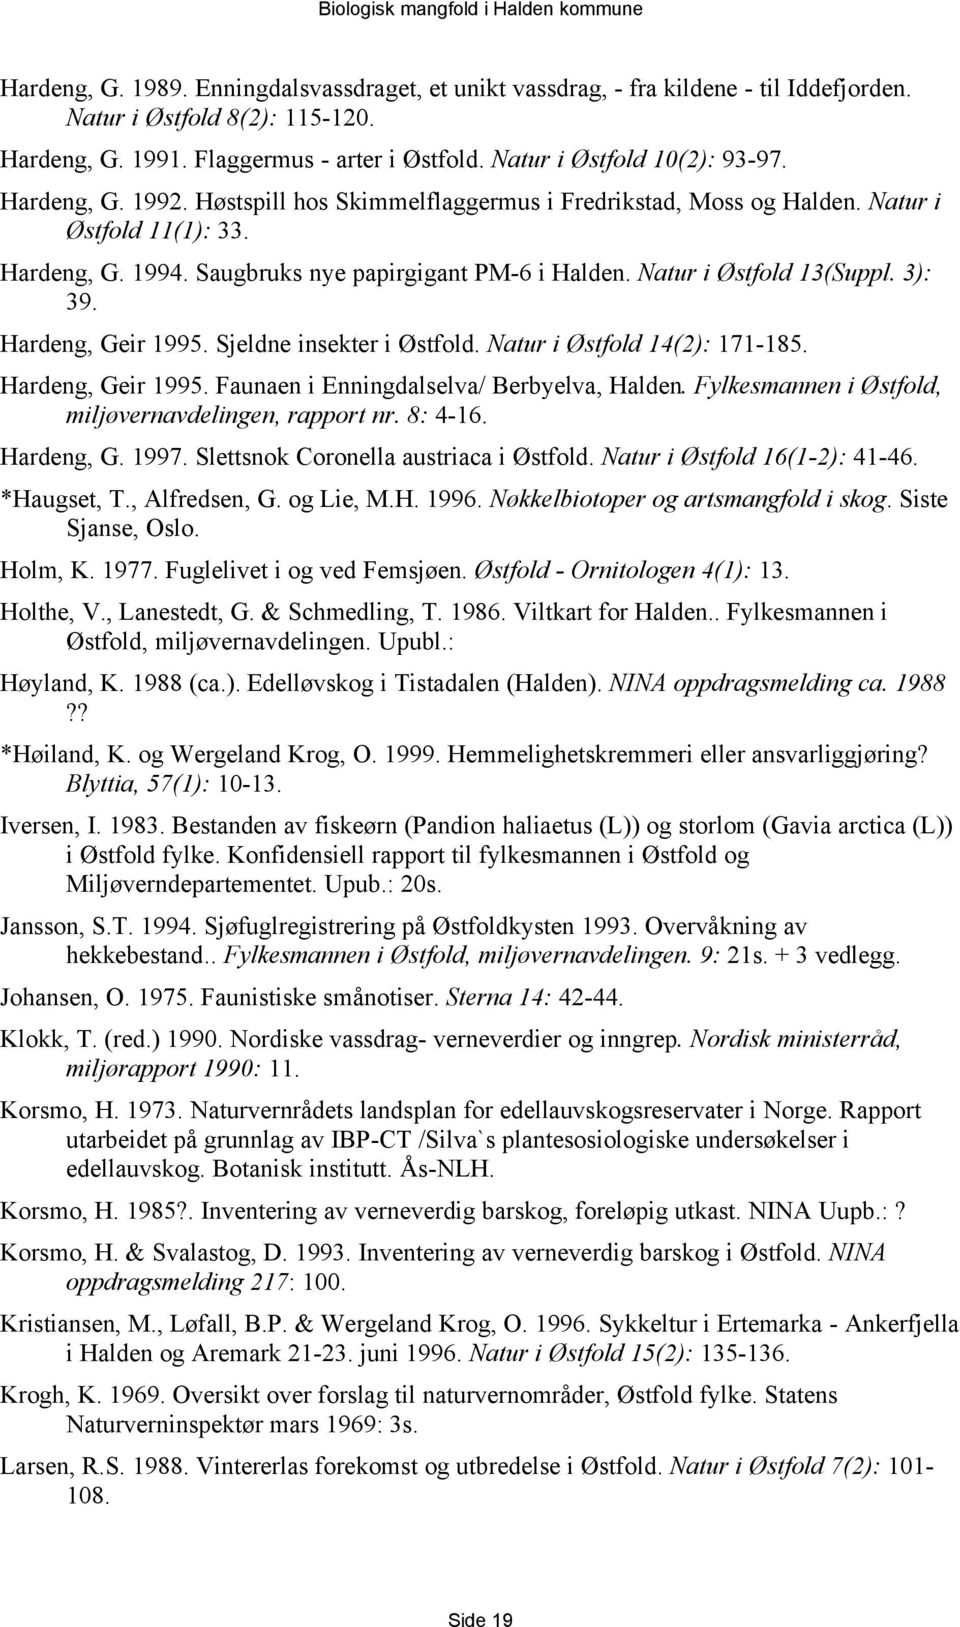 Hardeng, Geir 1995. Sjeldne insekter i Østfold. Natur i Østfold 14(2): 171-185. Hardeng, Geir 1995. Faunaen i Enningdalselva/ Berbyelva, Halden.